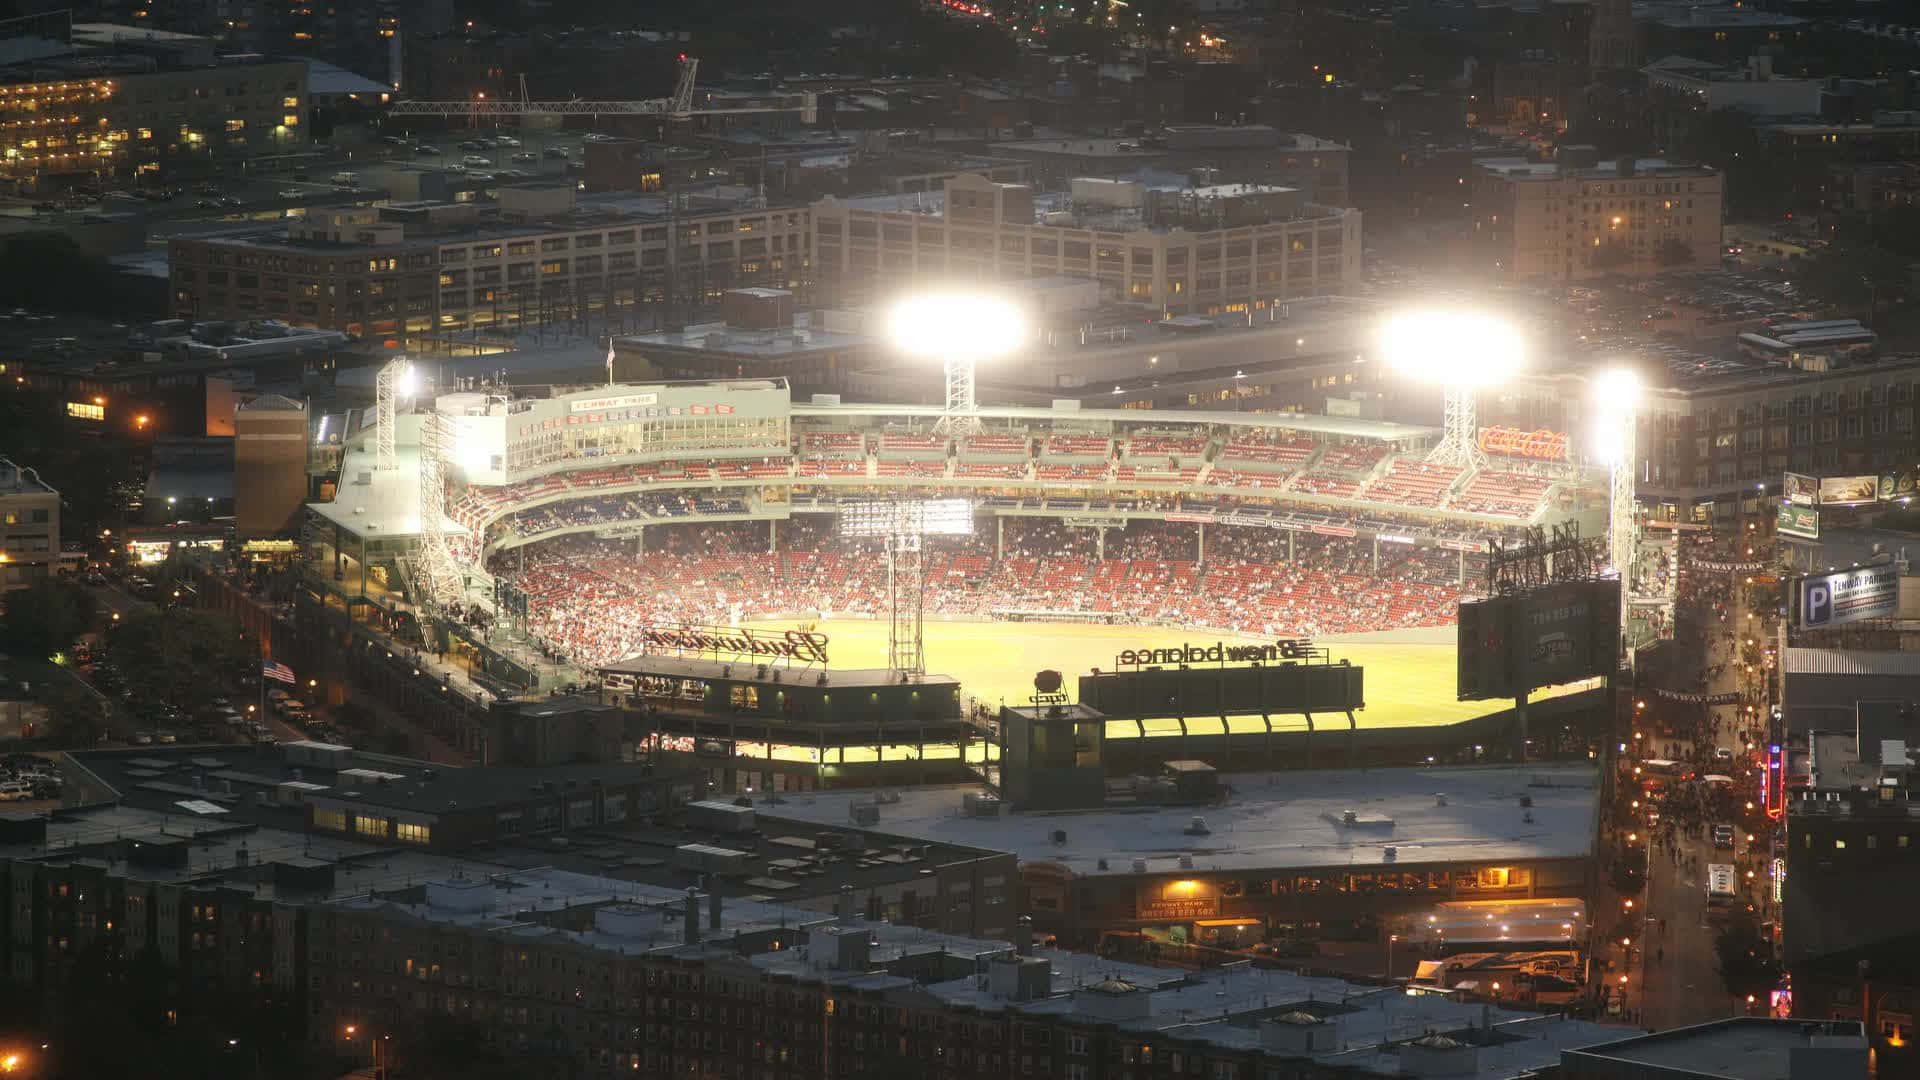 Et ikonisk udsyn af det ikoniske Fenway Park, hjemsted for Boston Red Sox. Wallpaper